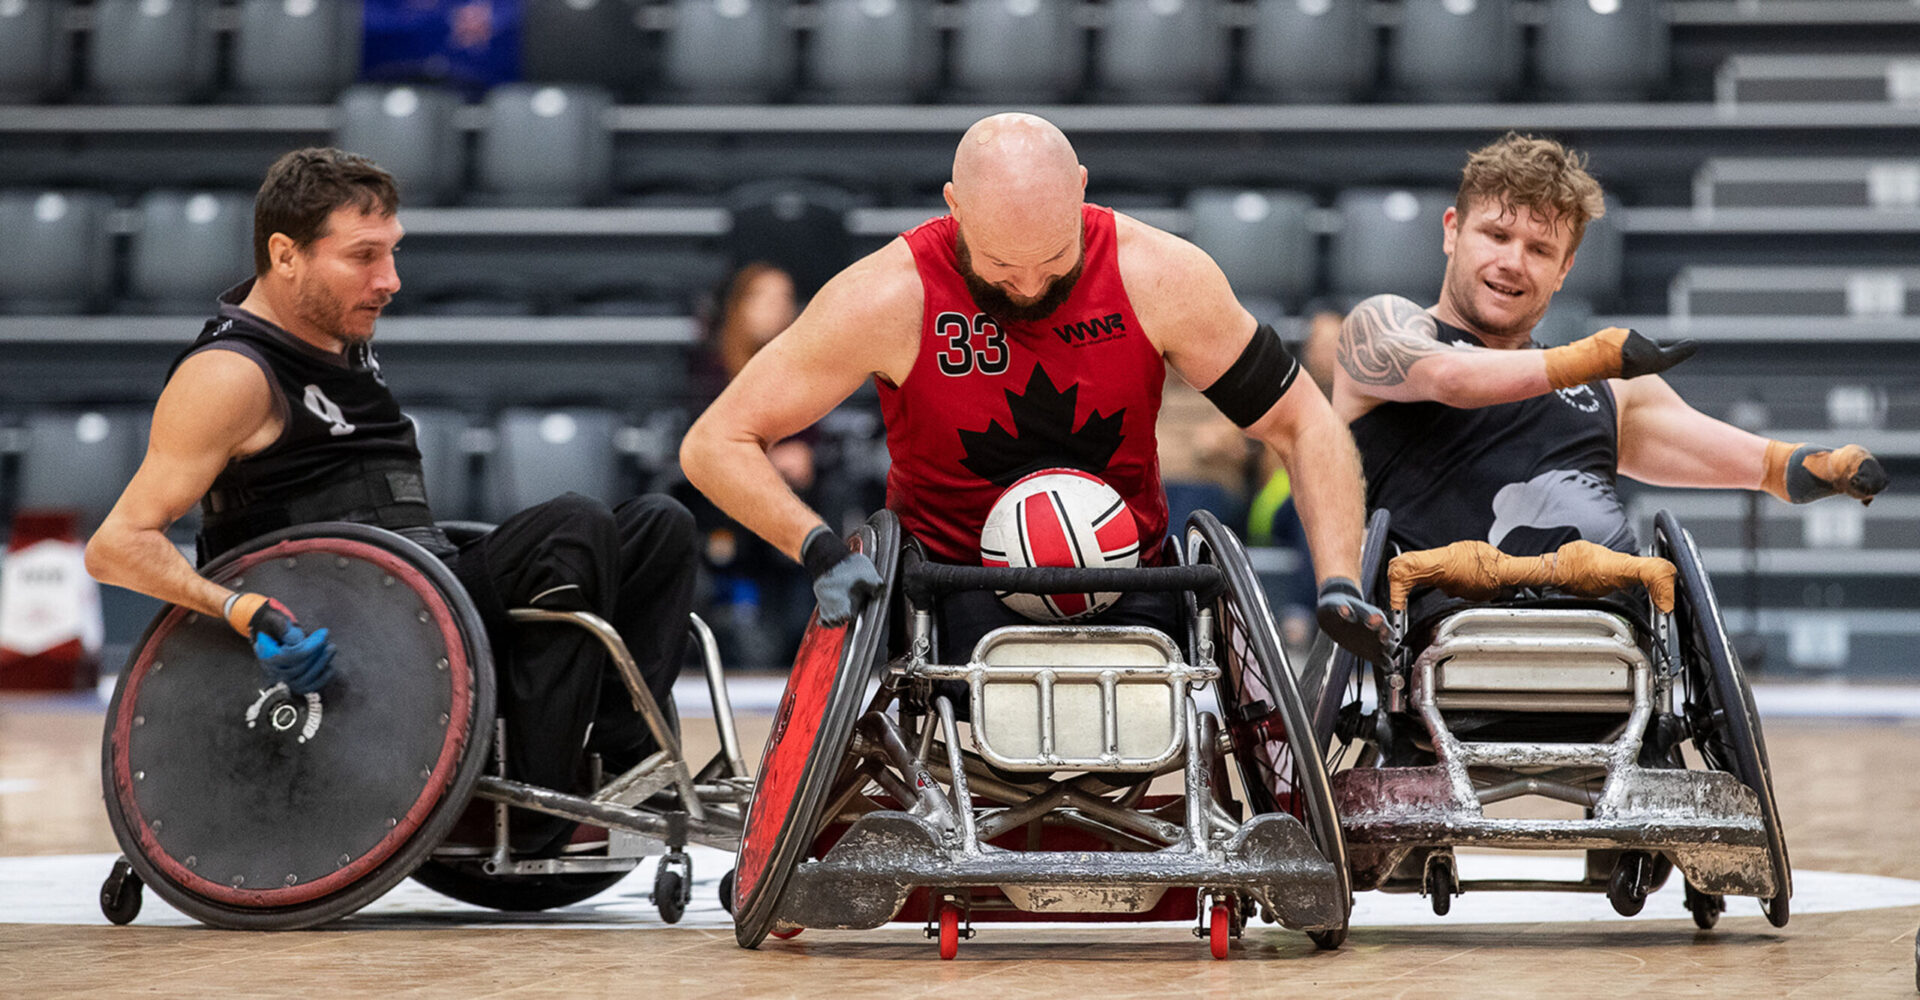 Le Canada remporte une victoire sur la Nouvelle-Zélande lors du Championnat du monde de rugby en fauteuil roulant 2022 grâce à une solide deuxième mi-temps